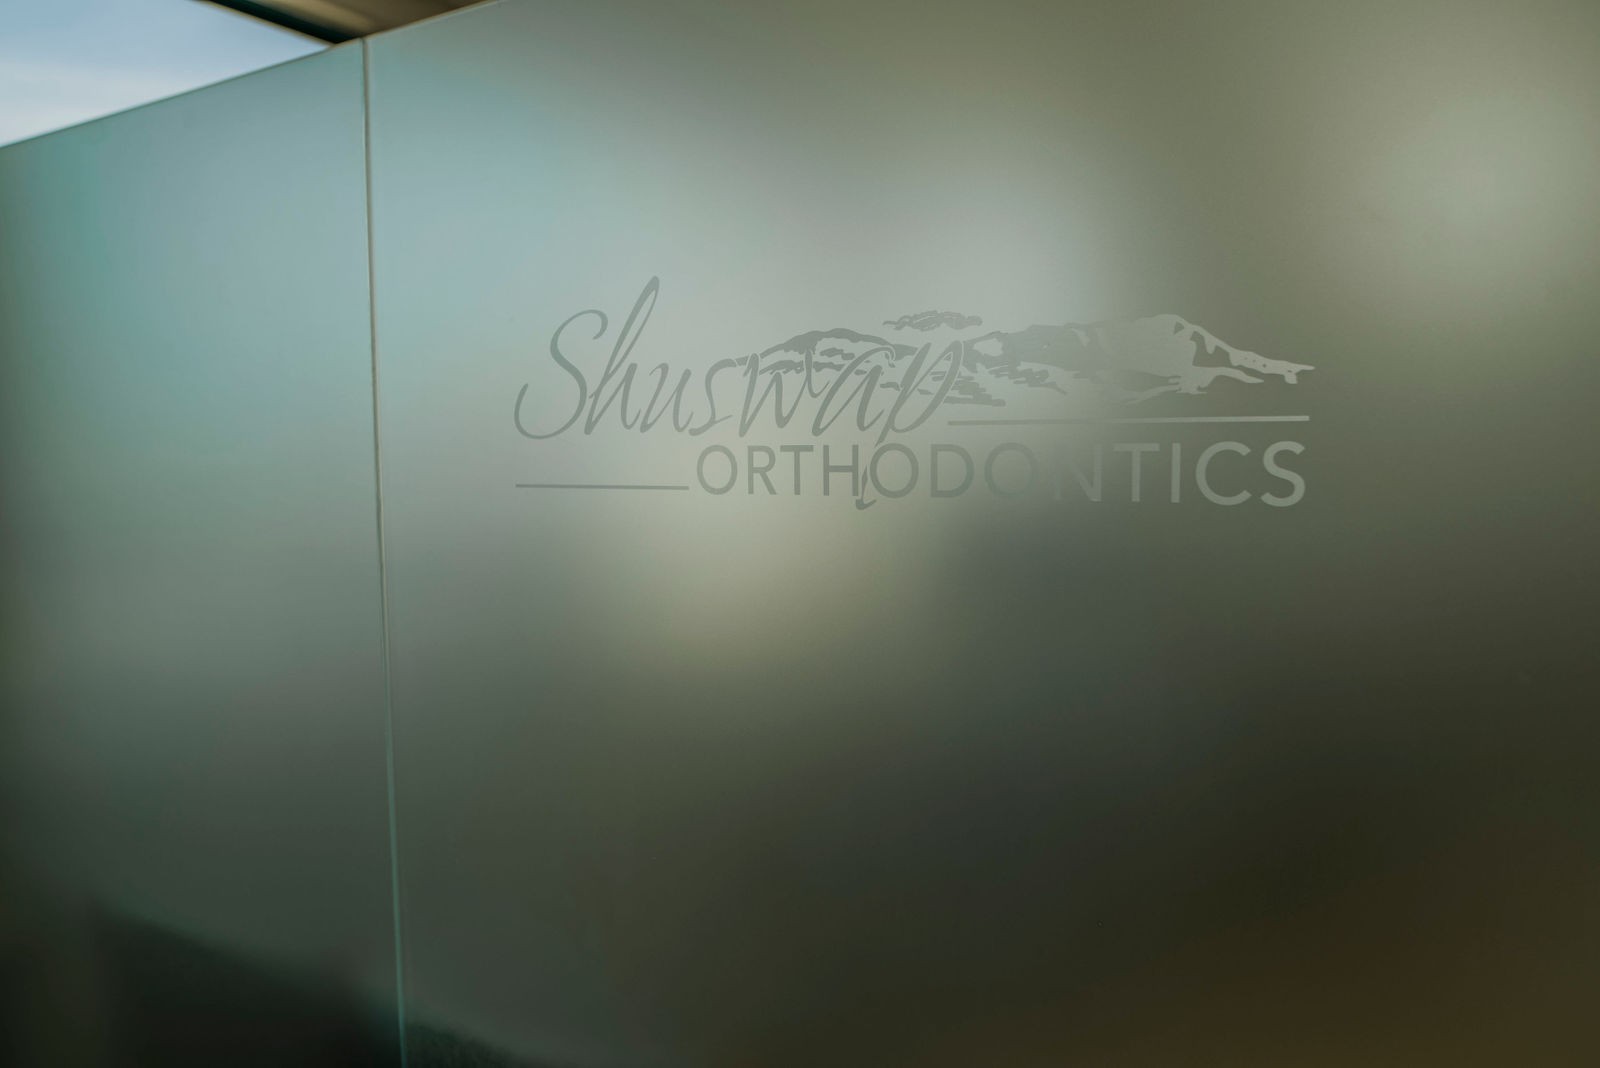 Shuswap Orthodontics Glass Decals